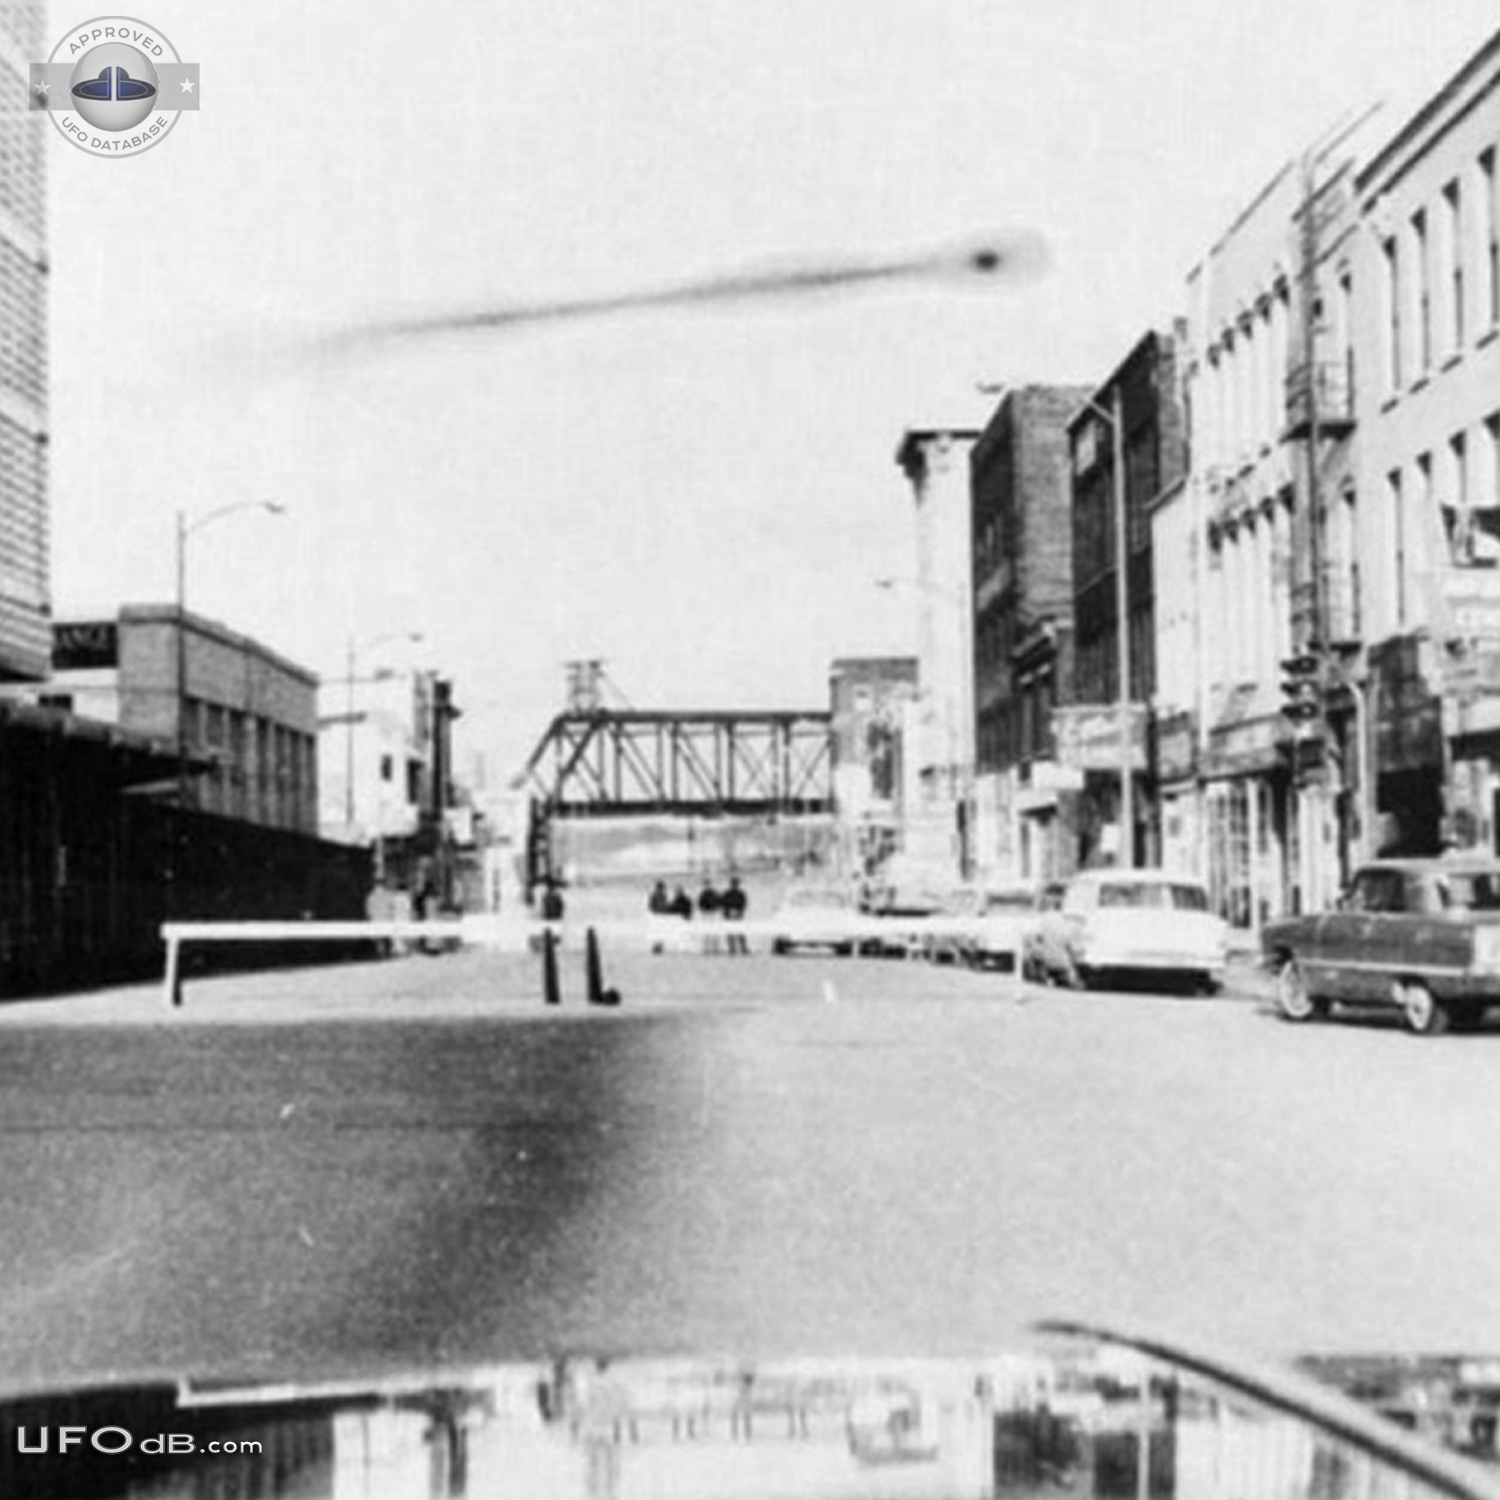 CIA Declassified UFO picture of 1965 in Omaha, Nebraska USA UFO Picture #631-3